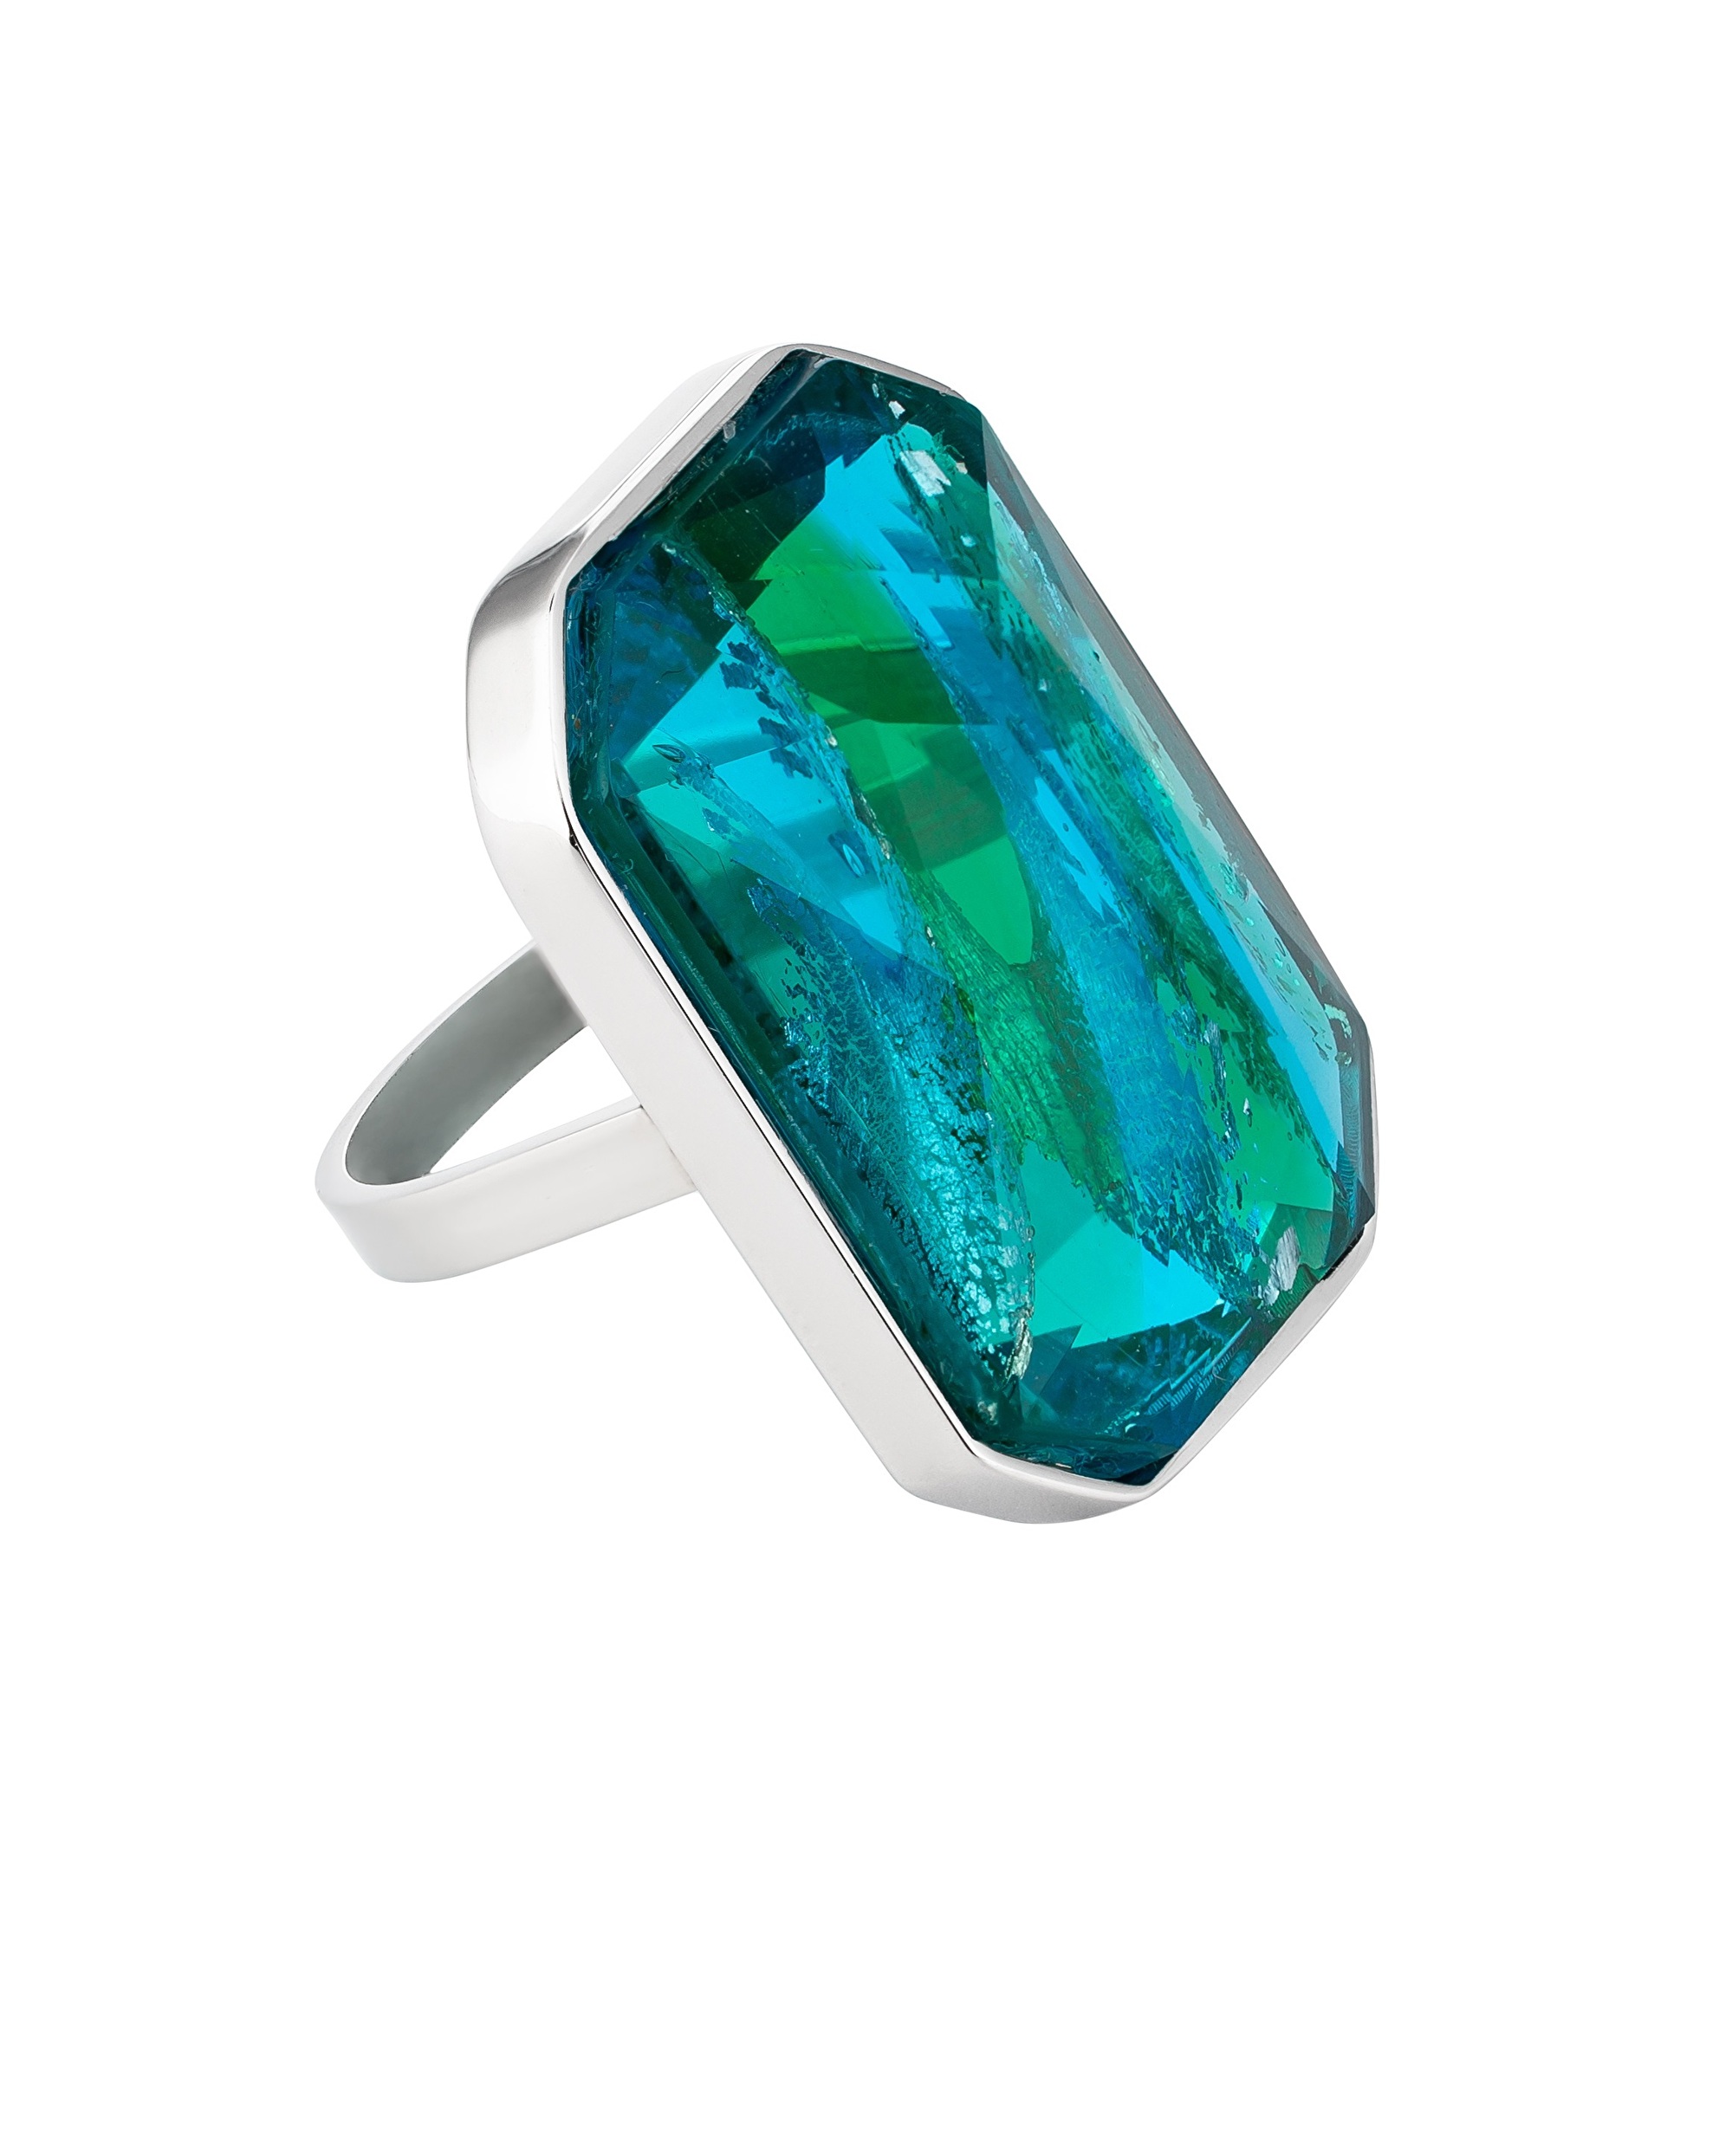 Preciosa Luxusní ocelový prsten s ručně mačkaným kamenem českého křišťálu Preciosa Ocean Emerald 7446 66 60 mm